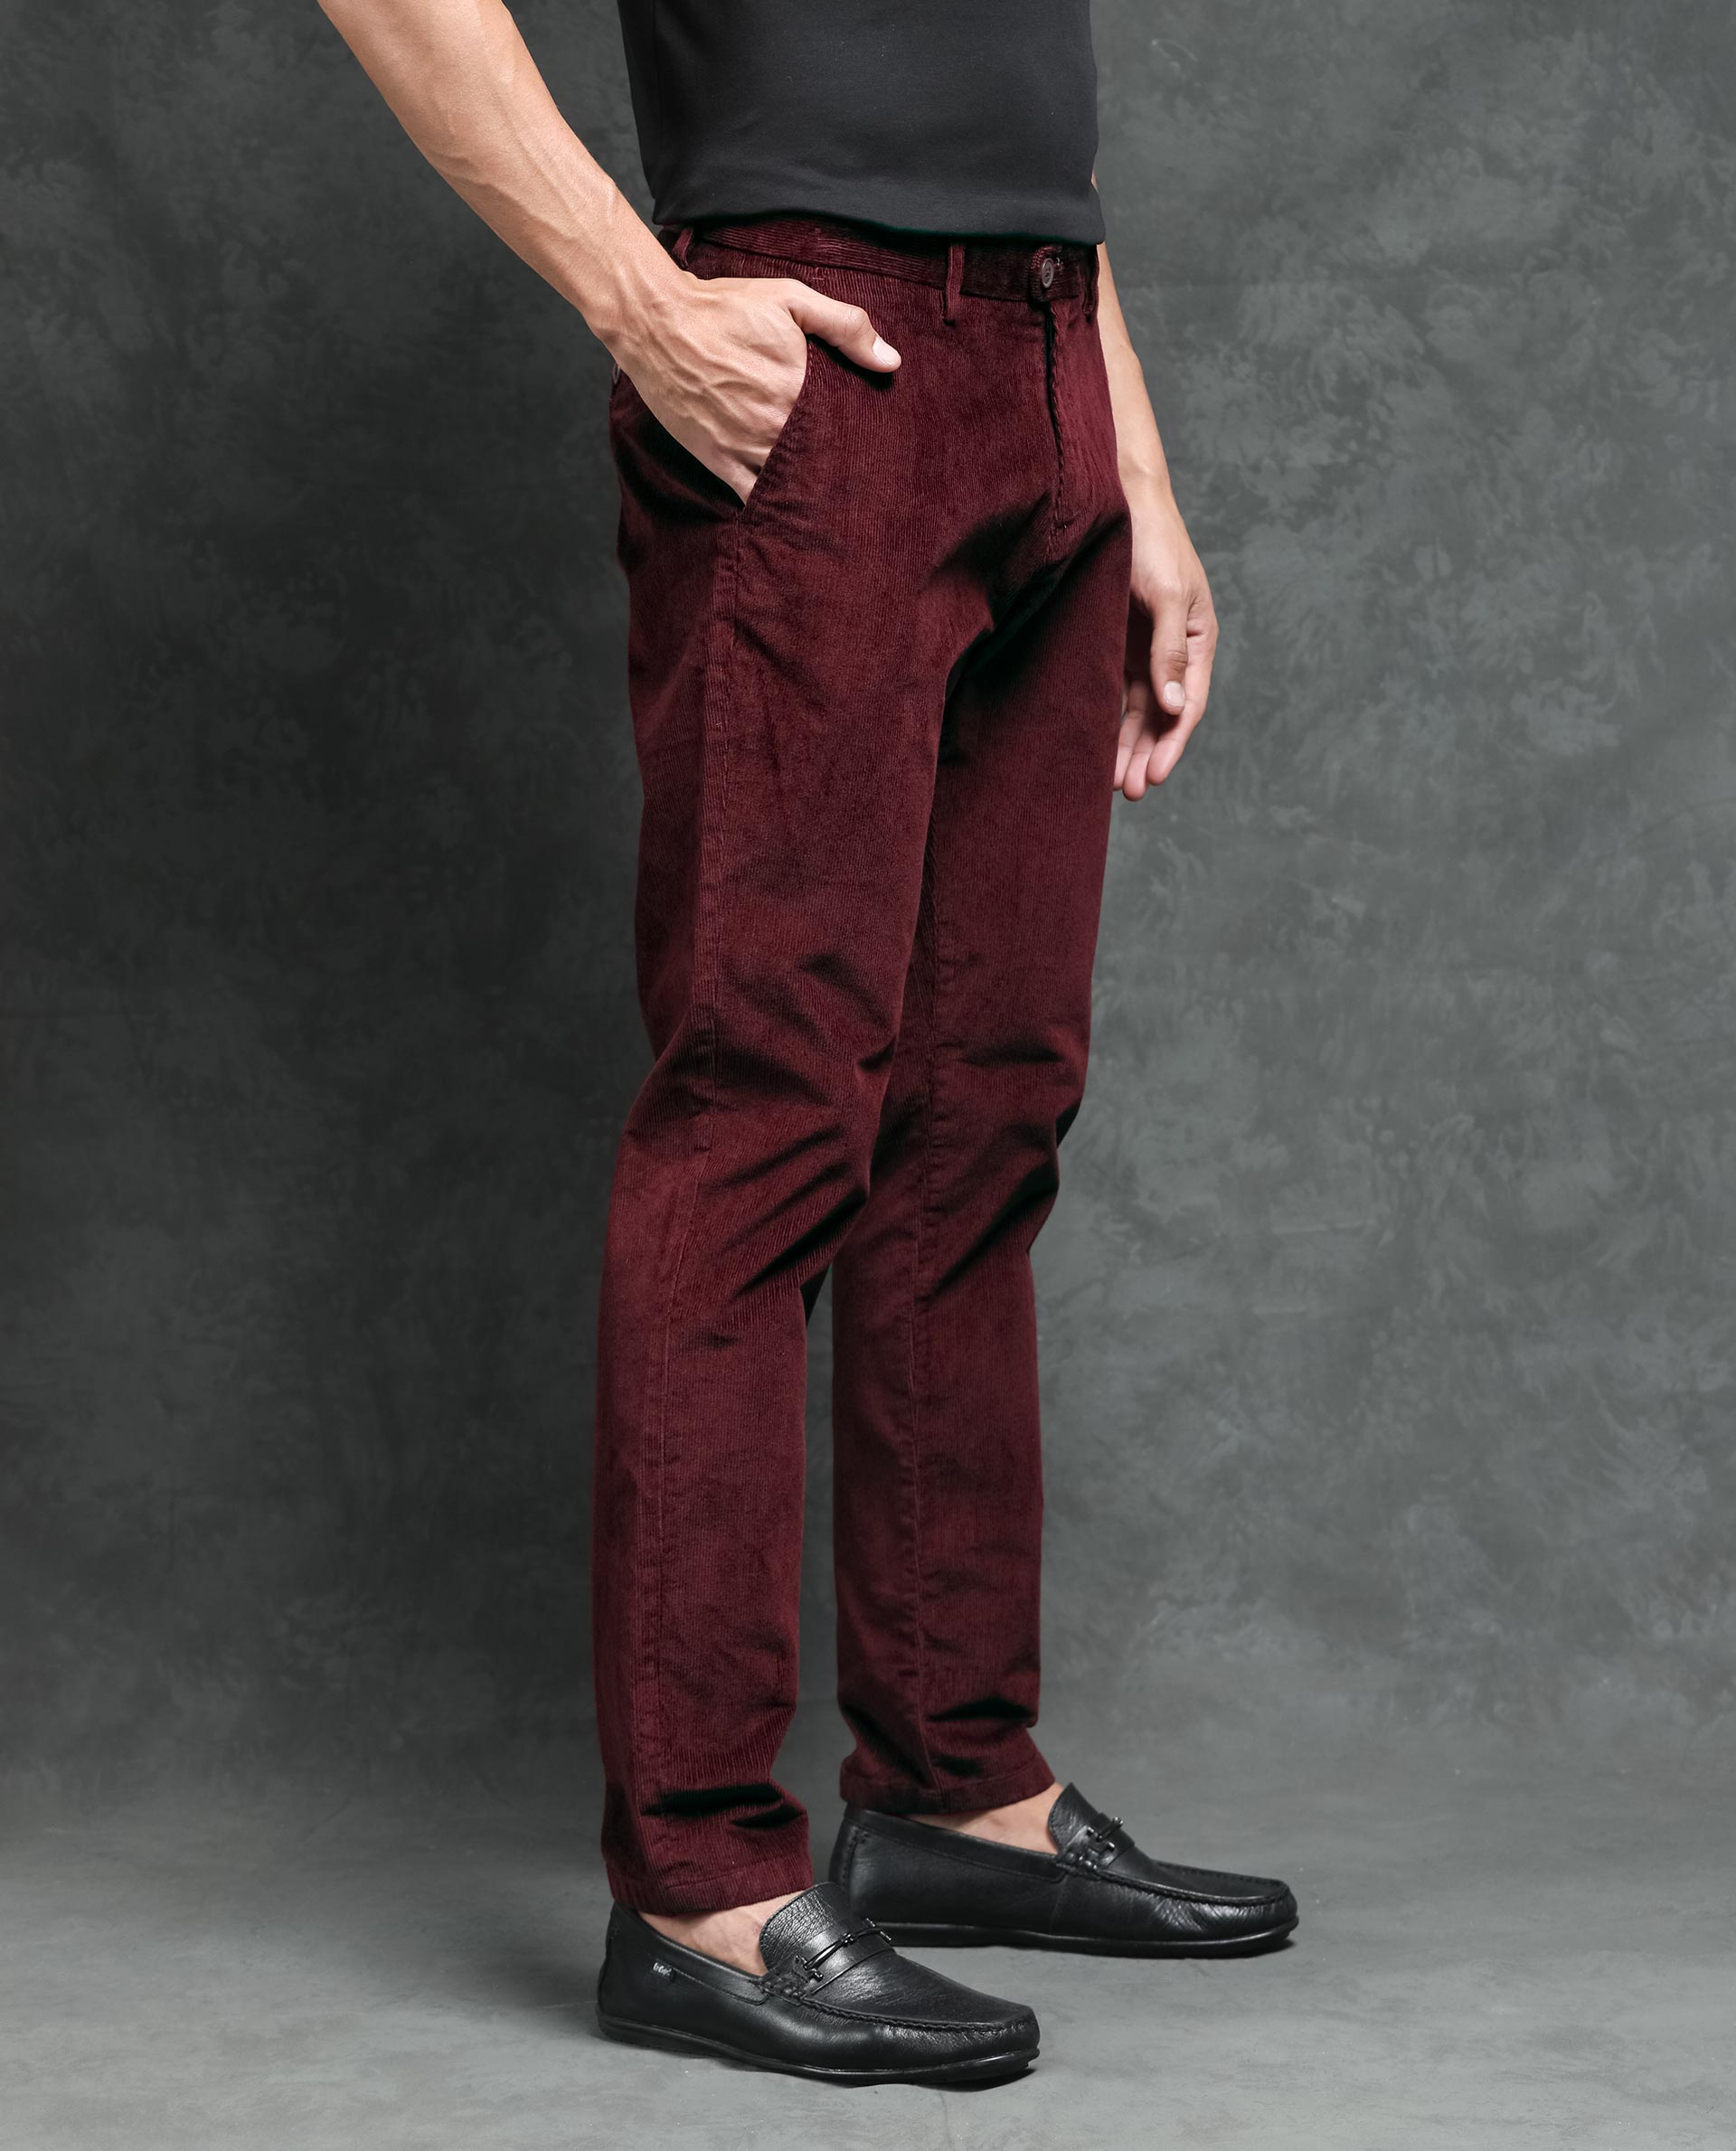 16 Best Corduroy Pants for Men 2023 | Men's Journal - Men's Journal